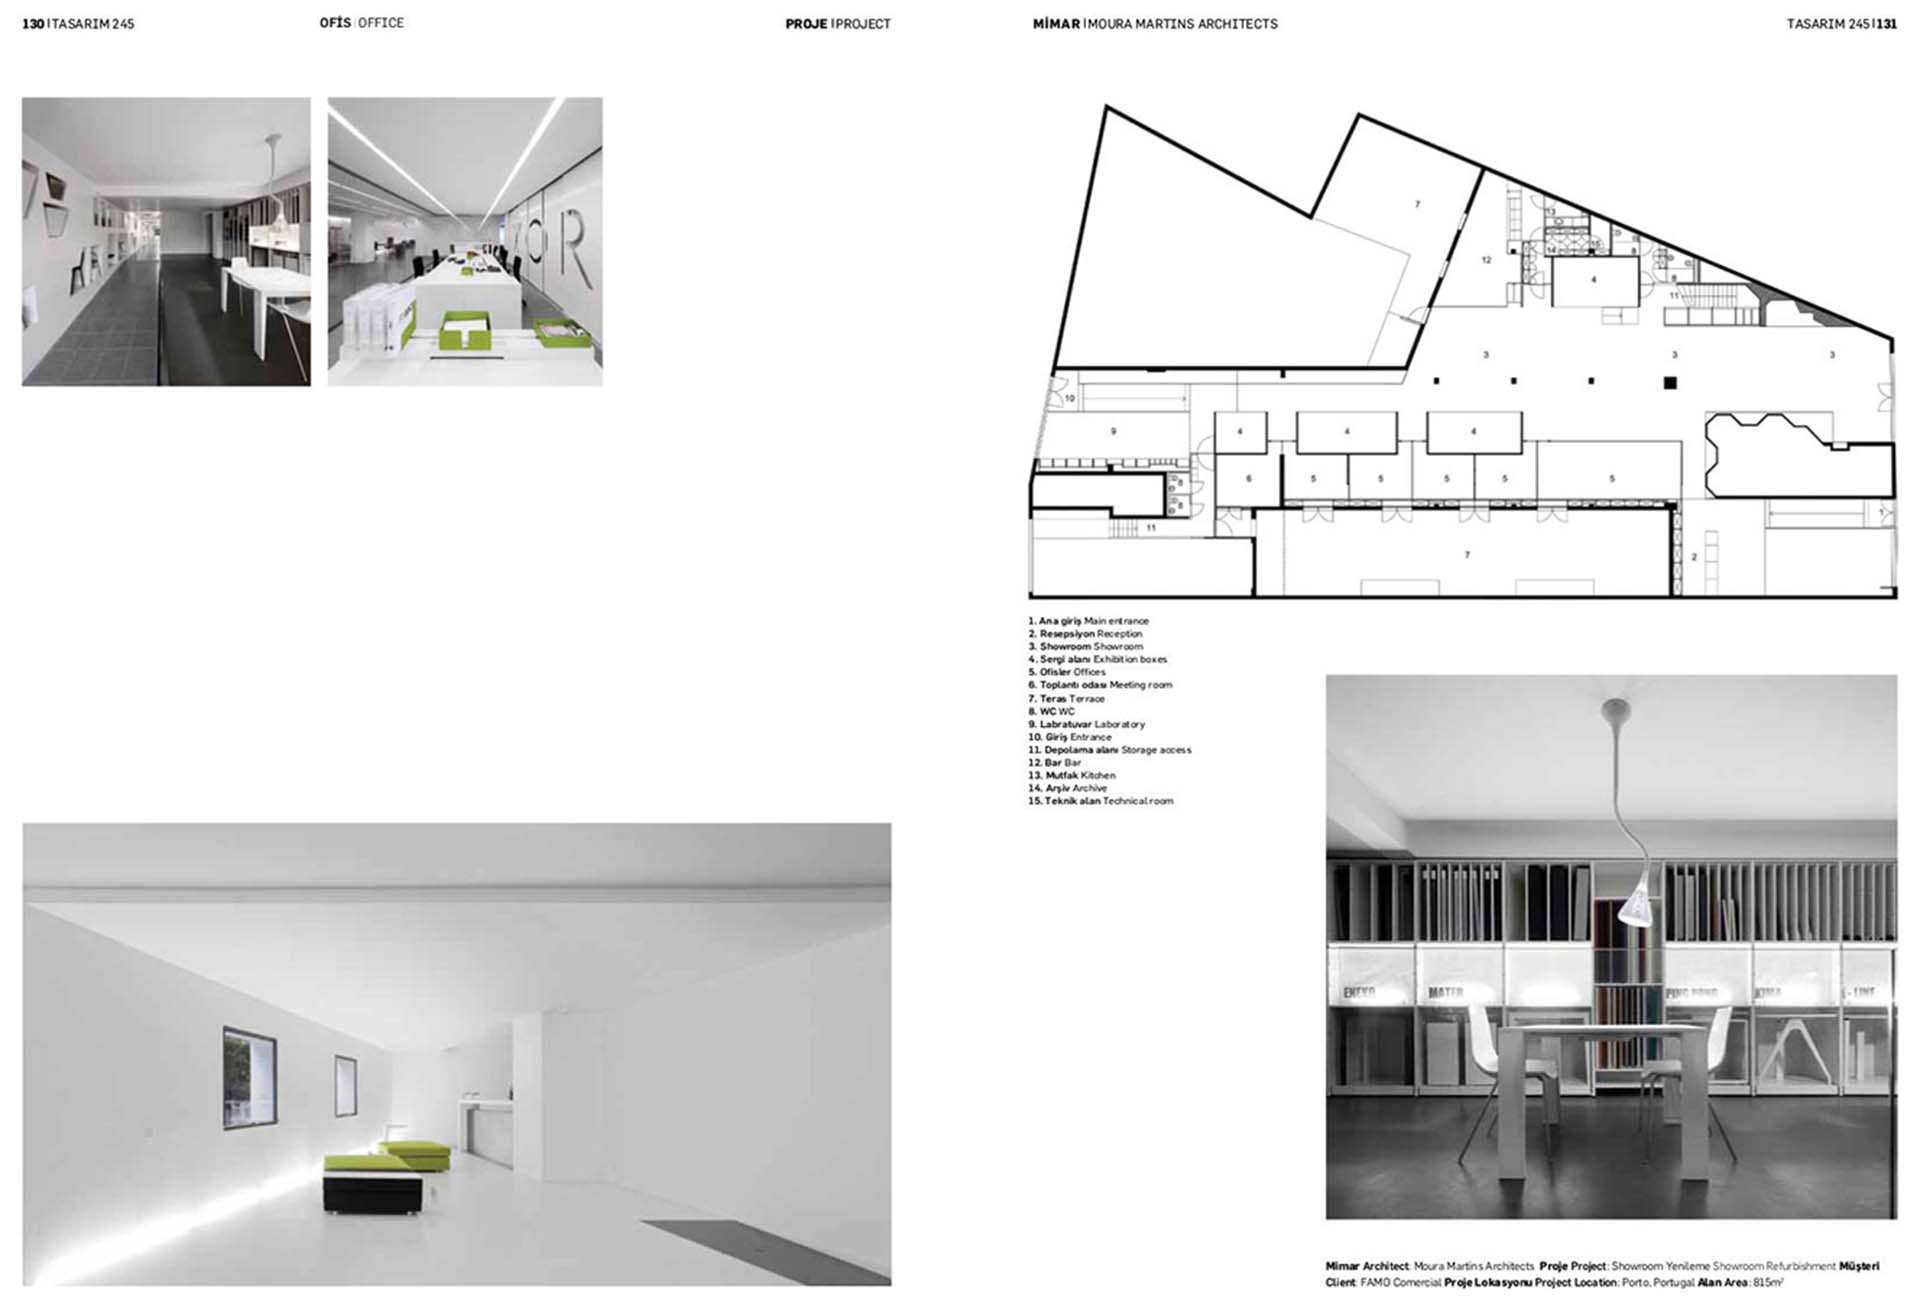 Moura Martins Arquitectos- Projetos de Arquitetura- Tasarim